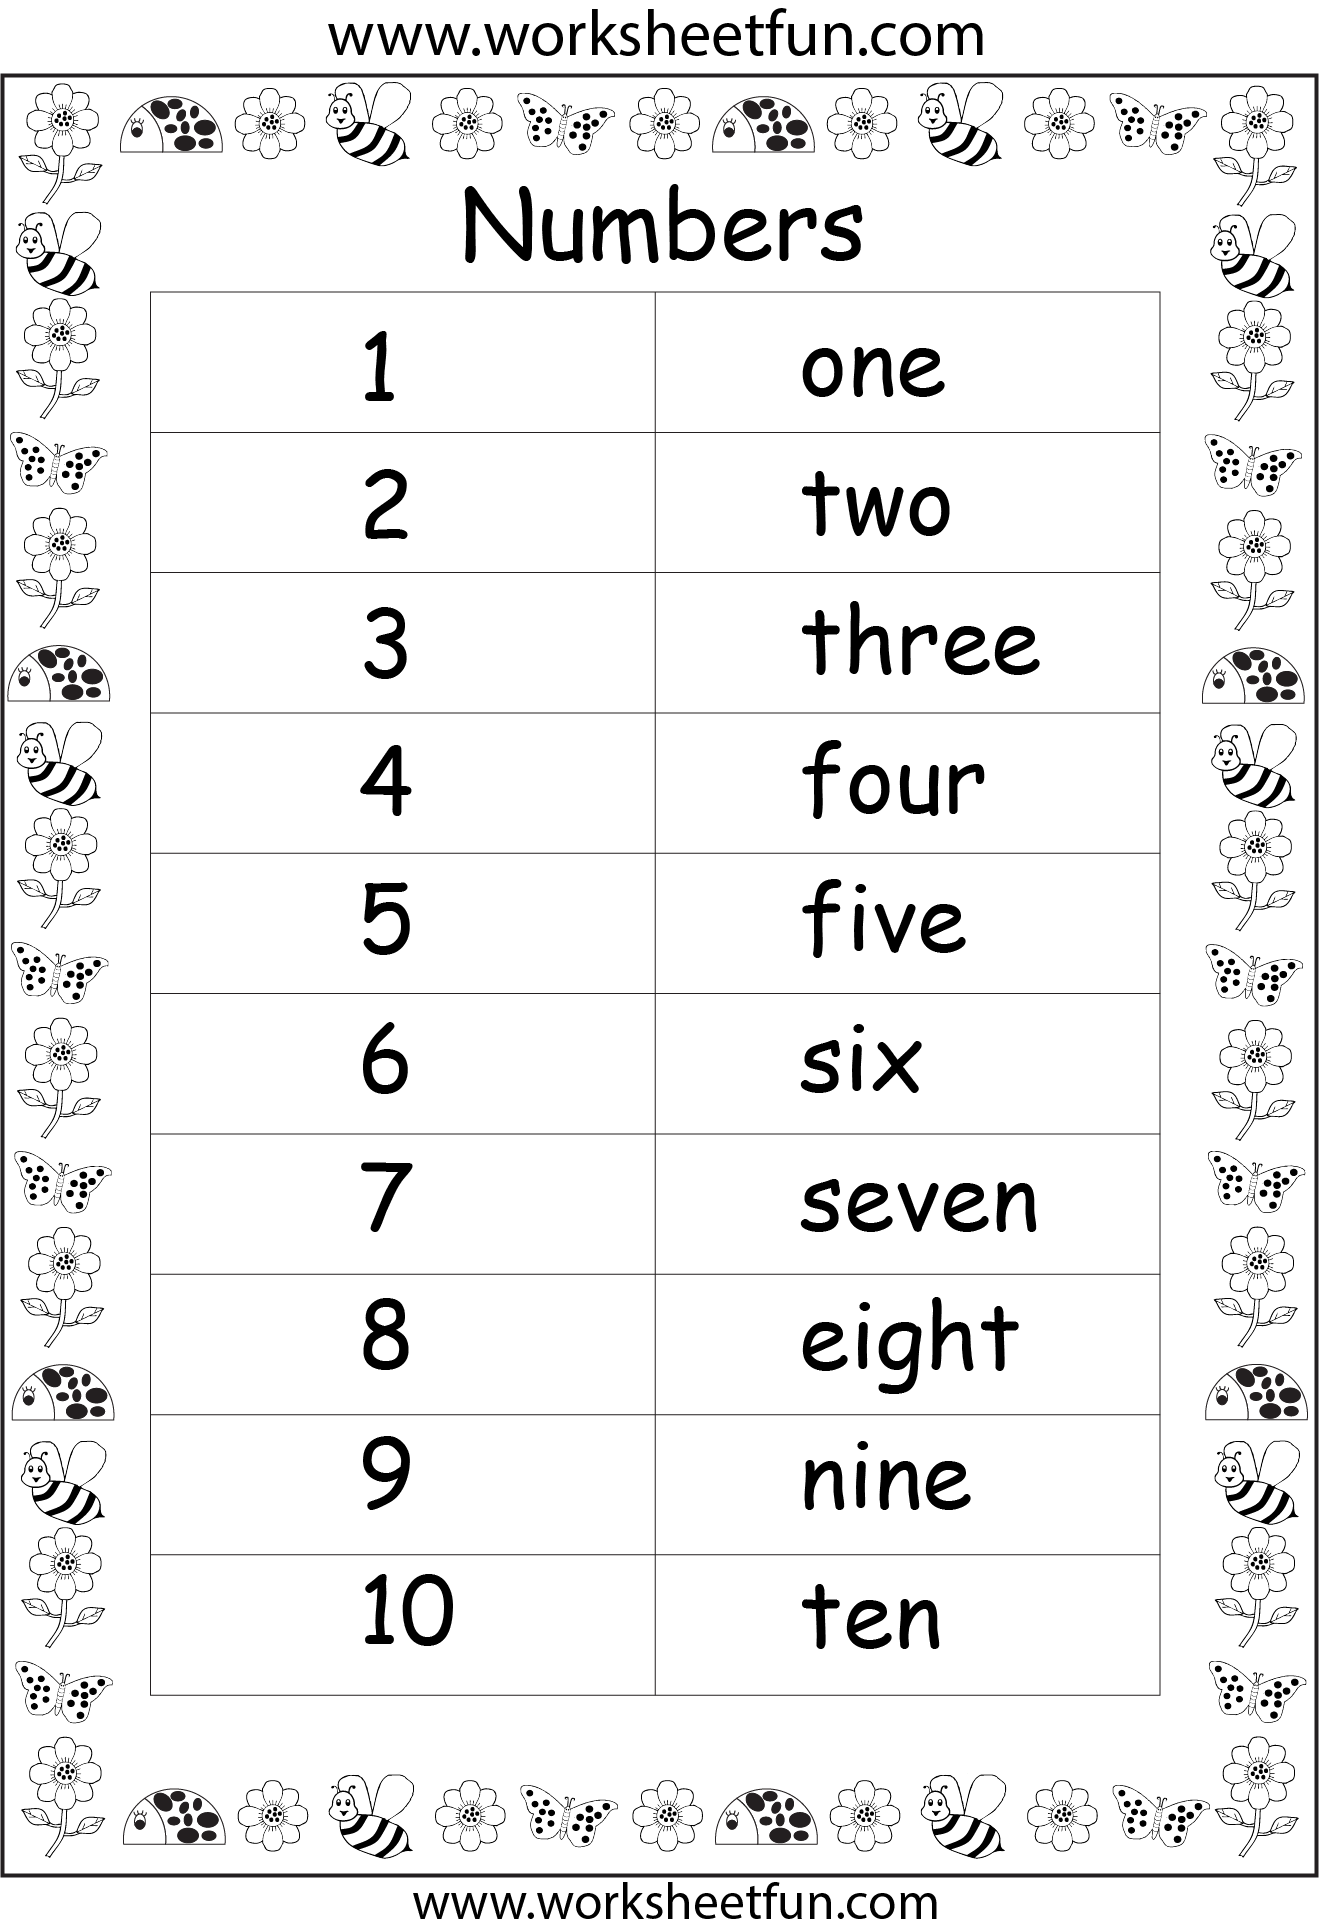 numbers-in-words-1-10-one-worksheet-free-printable-worksheets-worksheetfun